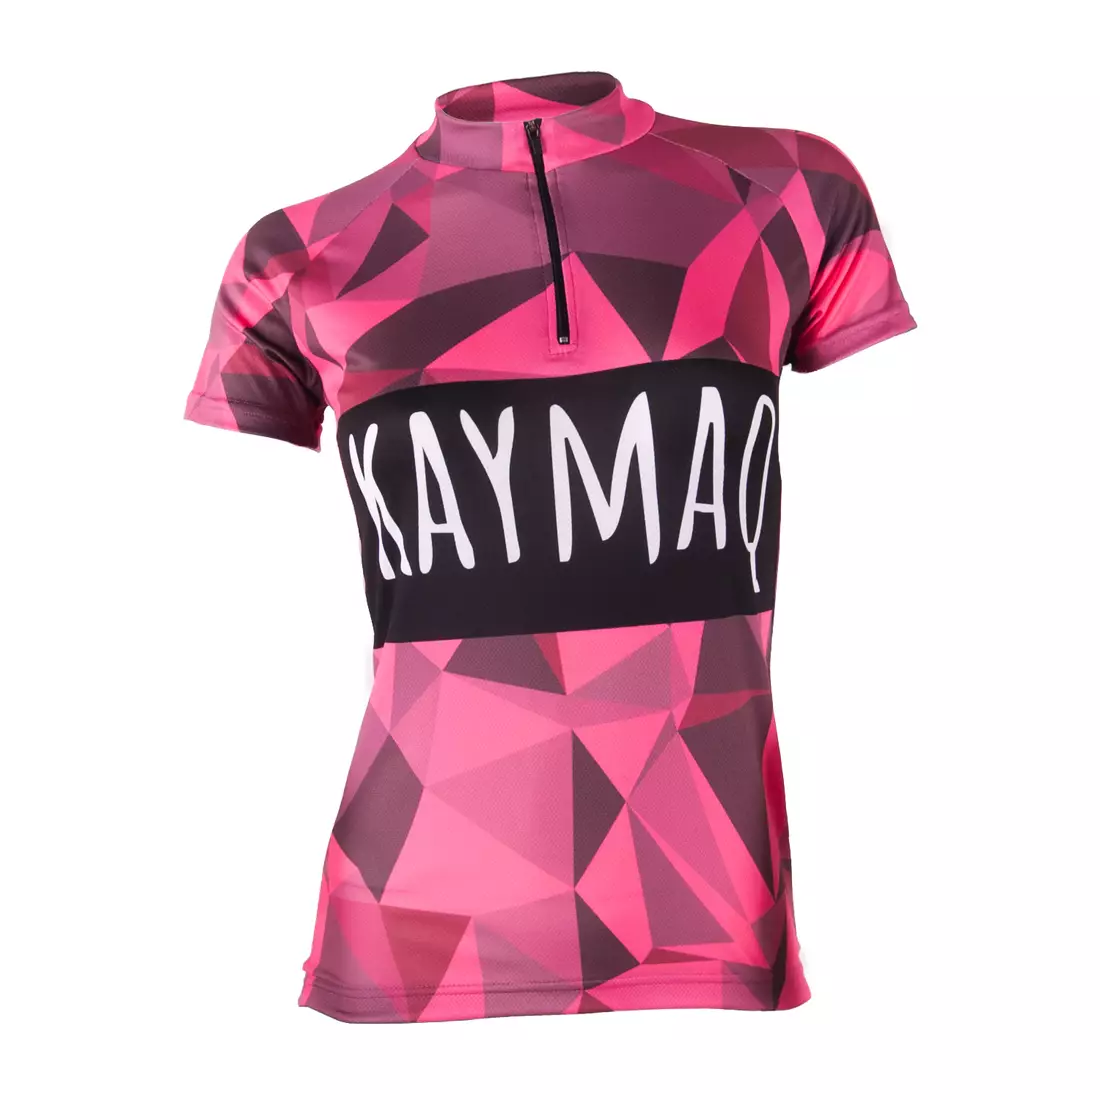 KAYMAQ RPS dámský růžový cyklistický dres